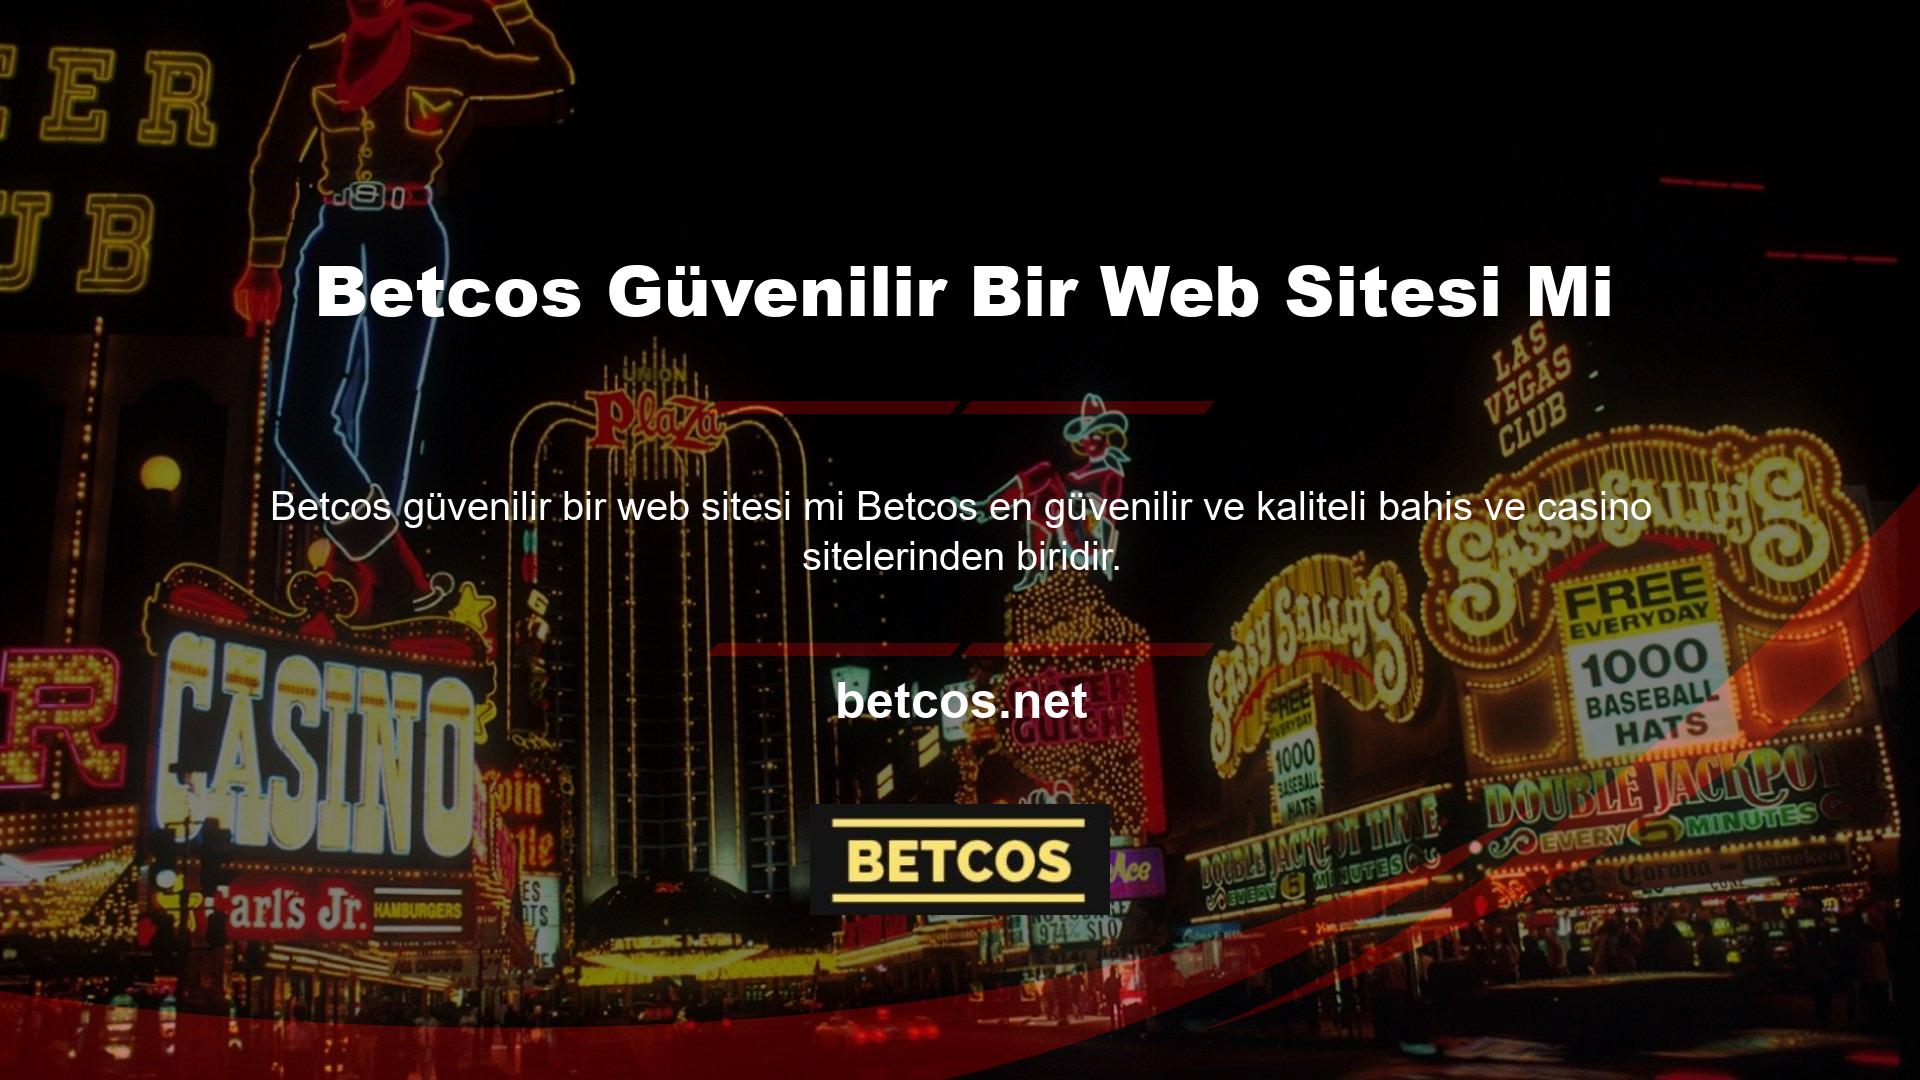 Betcos, kullanıcılarına ana sayfasının sağ alt köşesinde bulunan canlı destek birimi aracılığıyla hizmet vermektedir